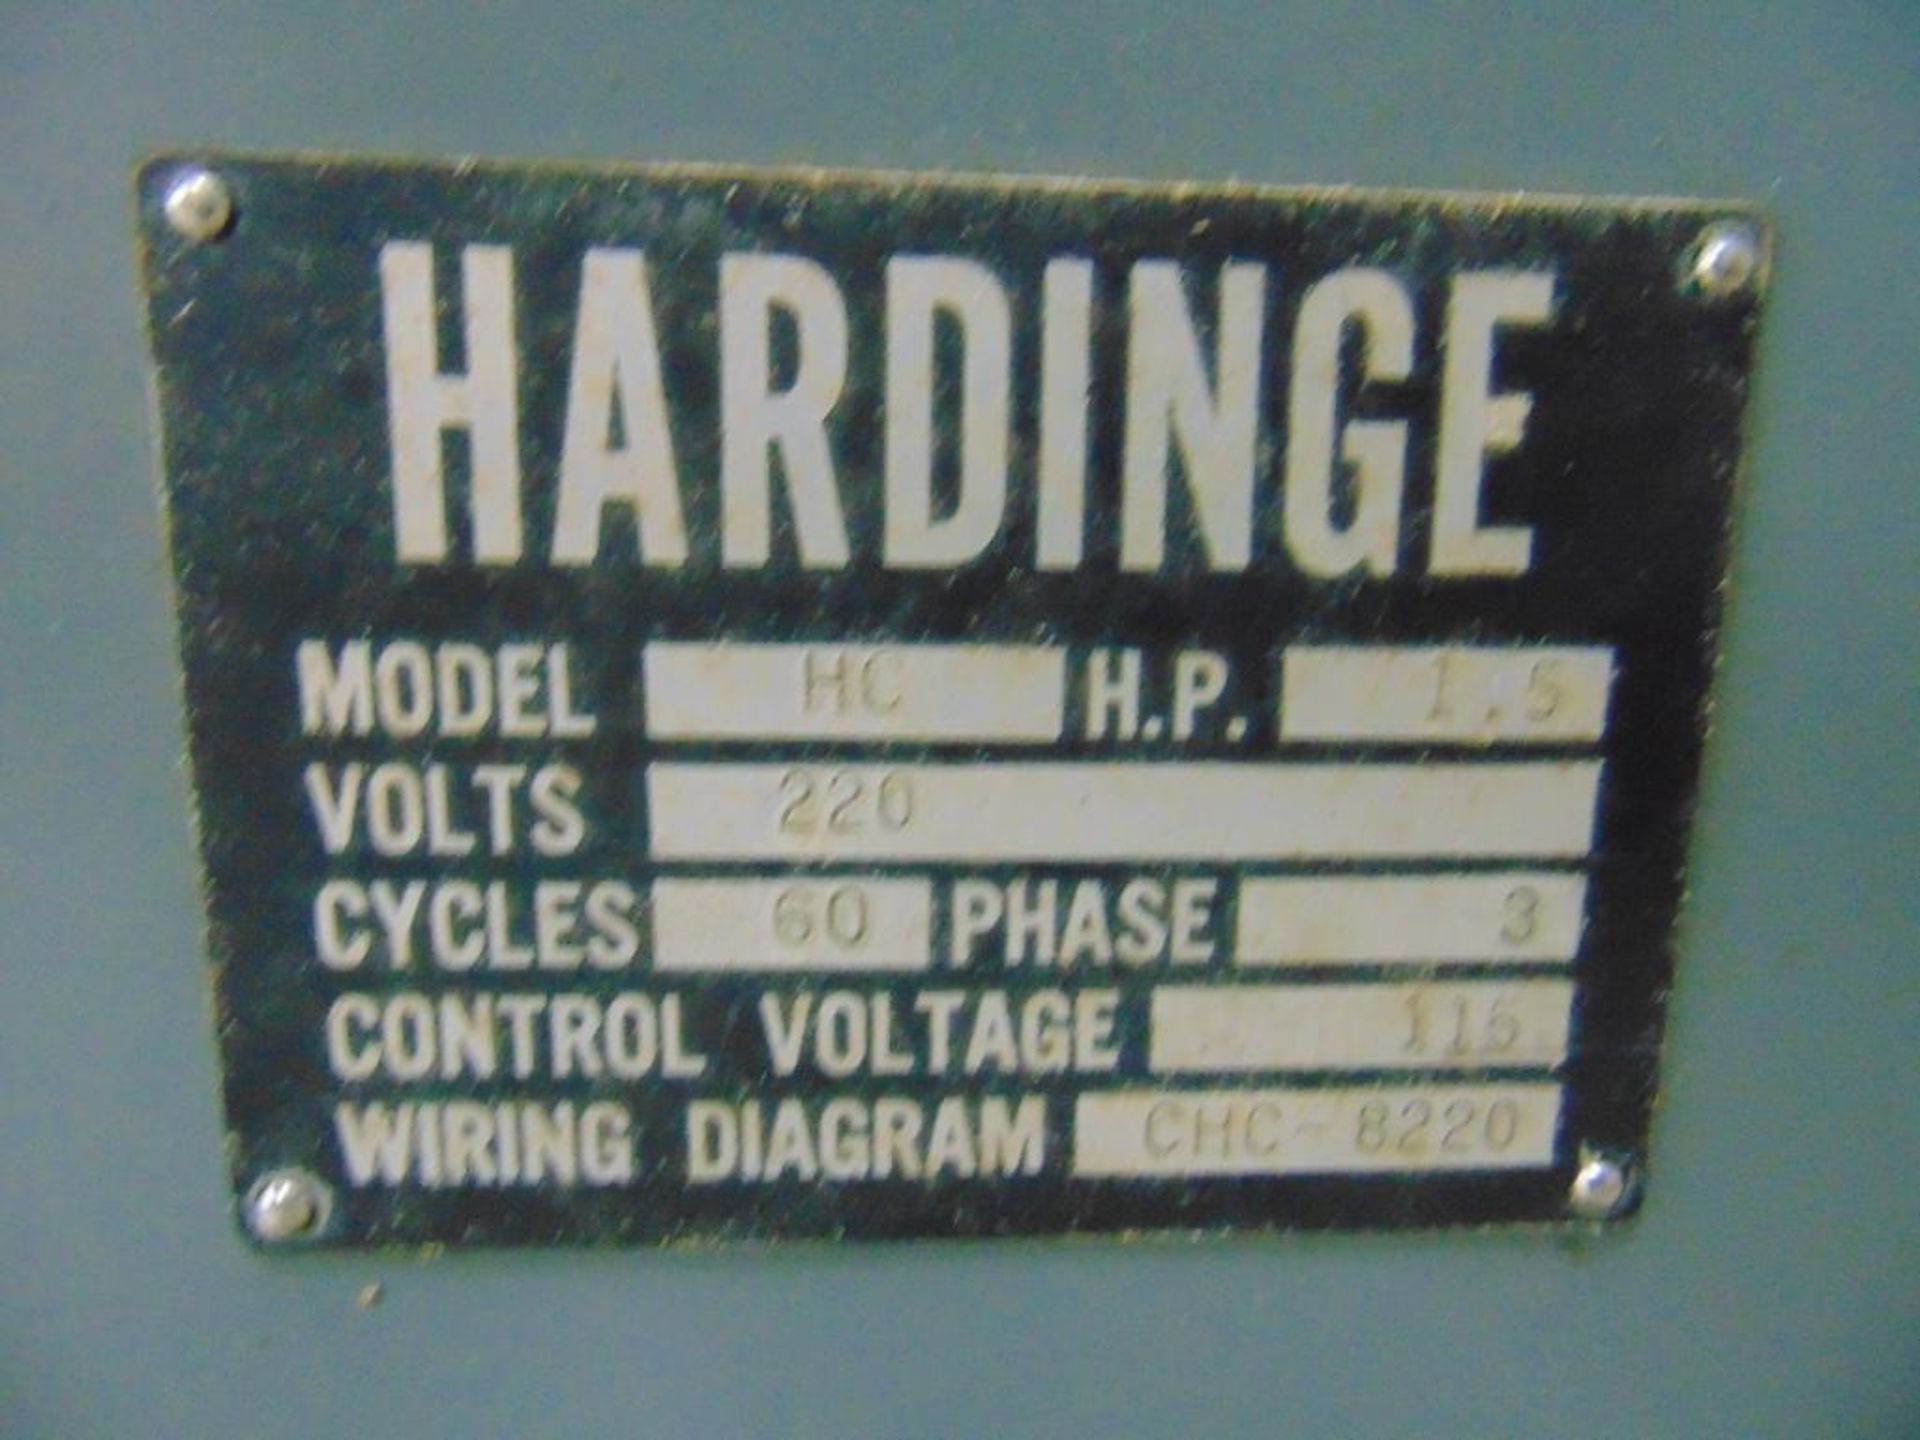 Hardinge HC Turret Toolroom Lathe - Image 10 of 10